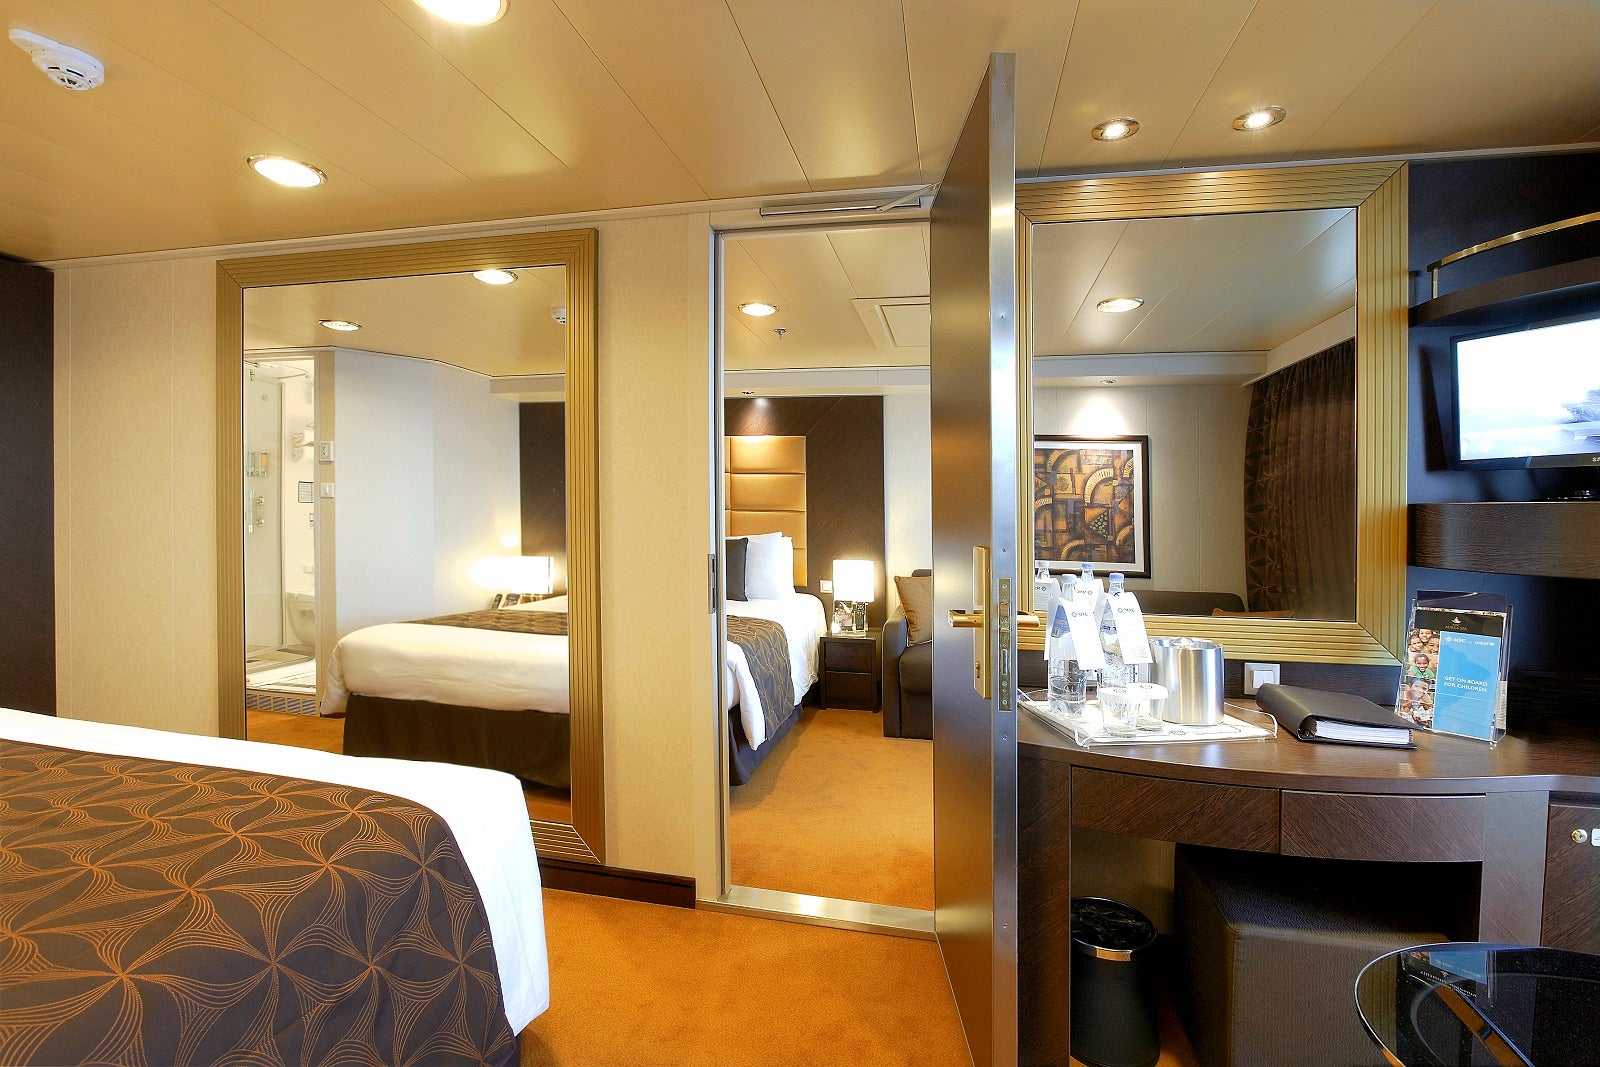 The door is open between two cruise ship cabins